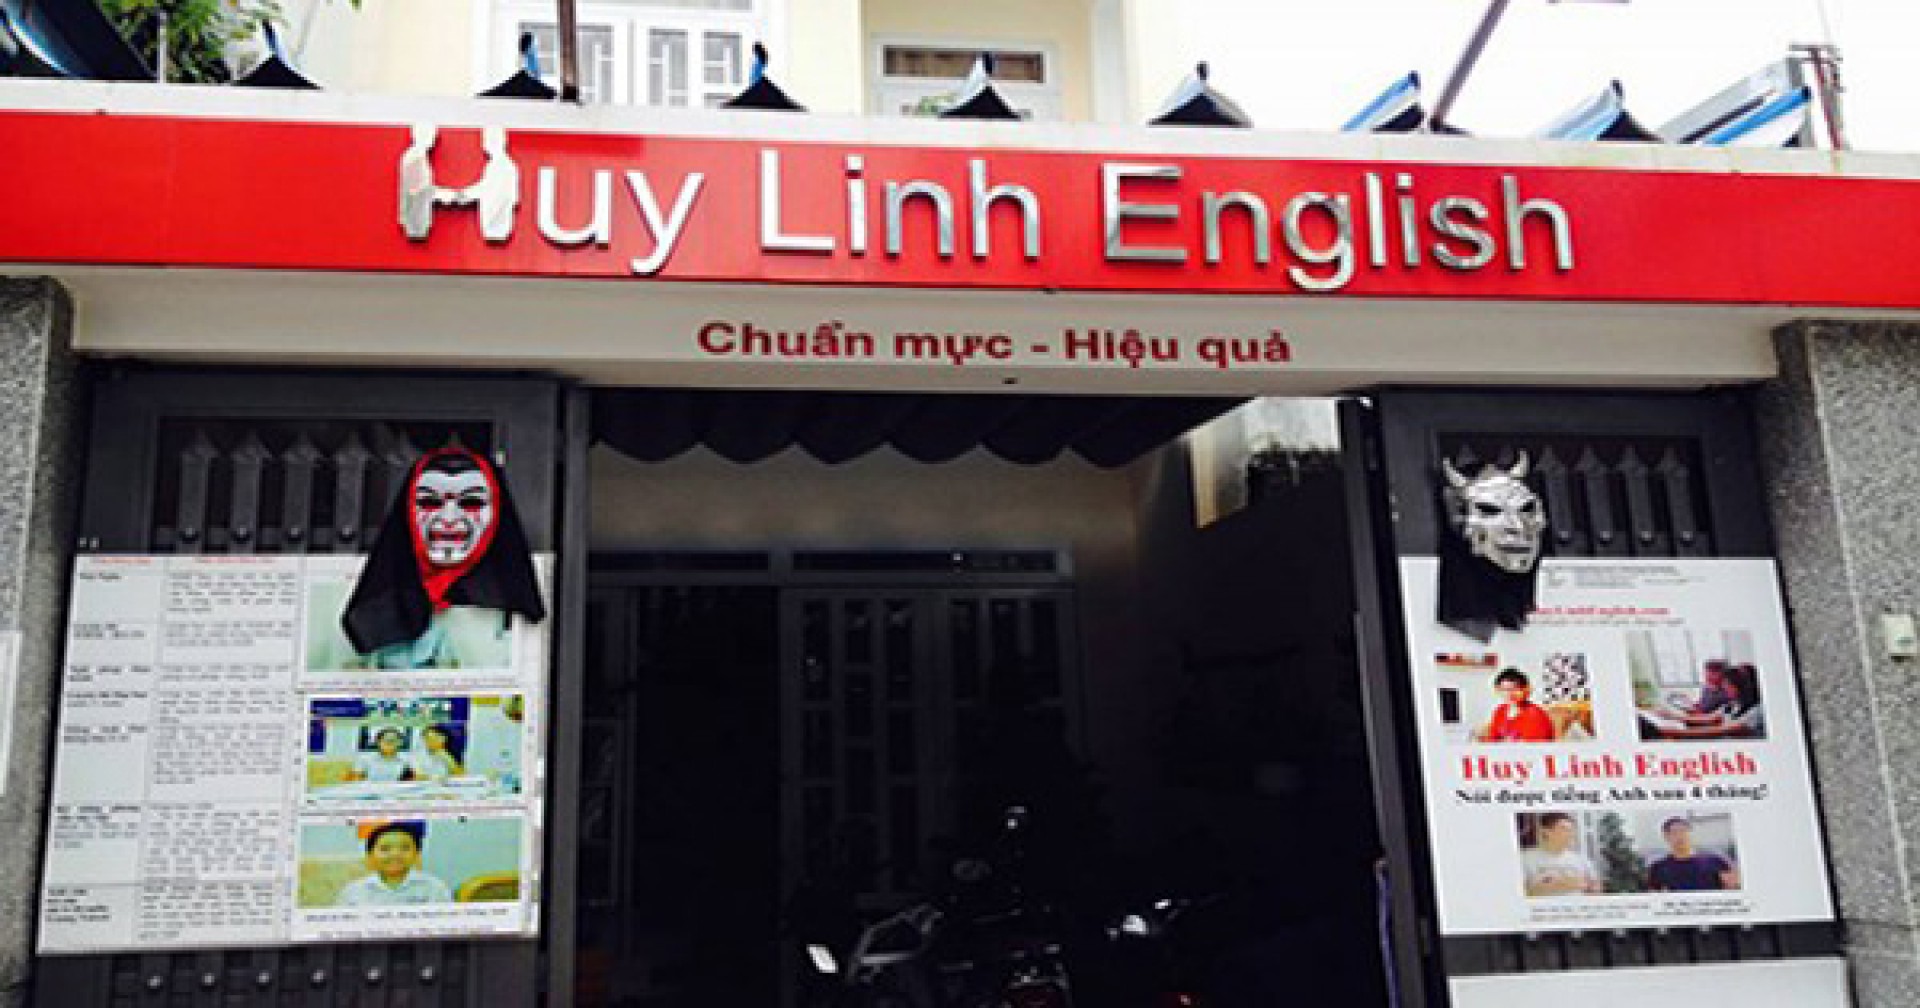 Các khóa học, học phí và lịch học mới nhất của trung tâm Huy Linh English